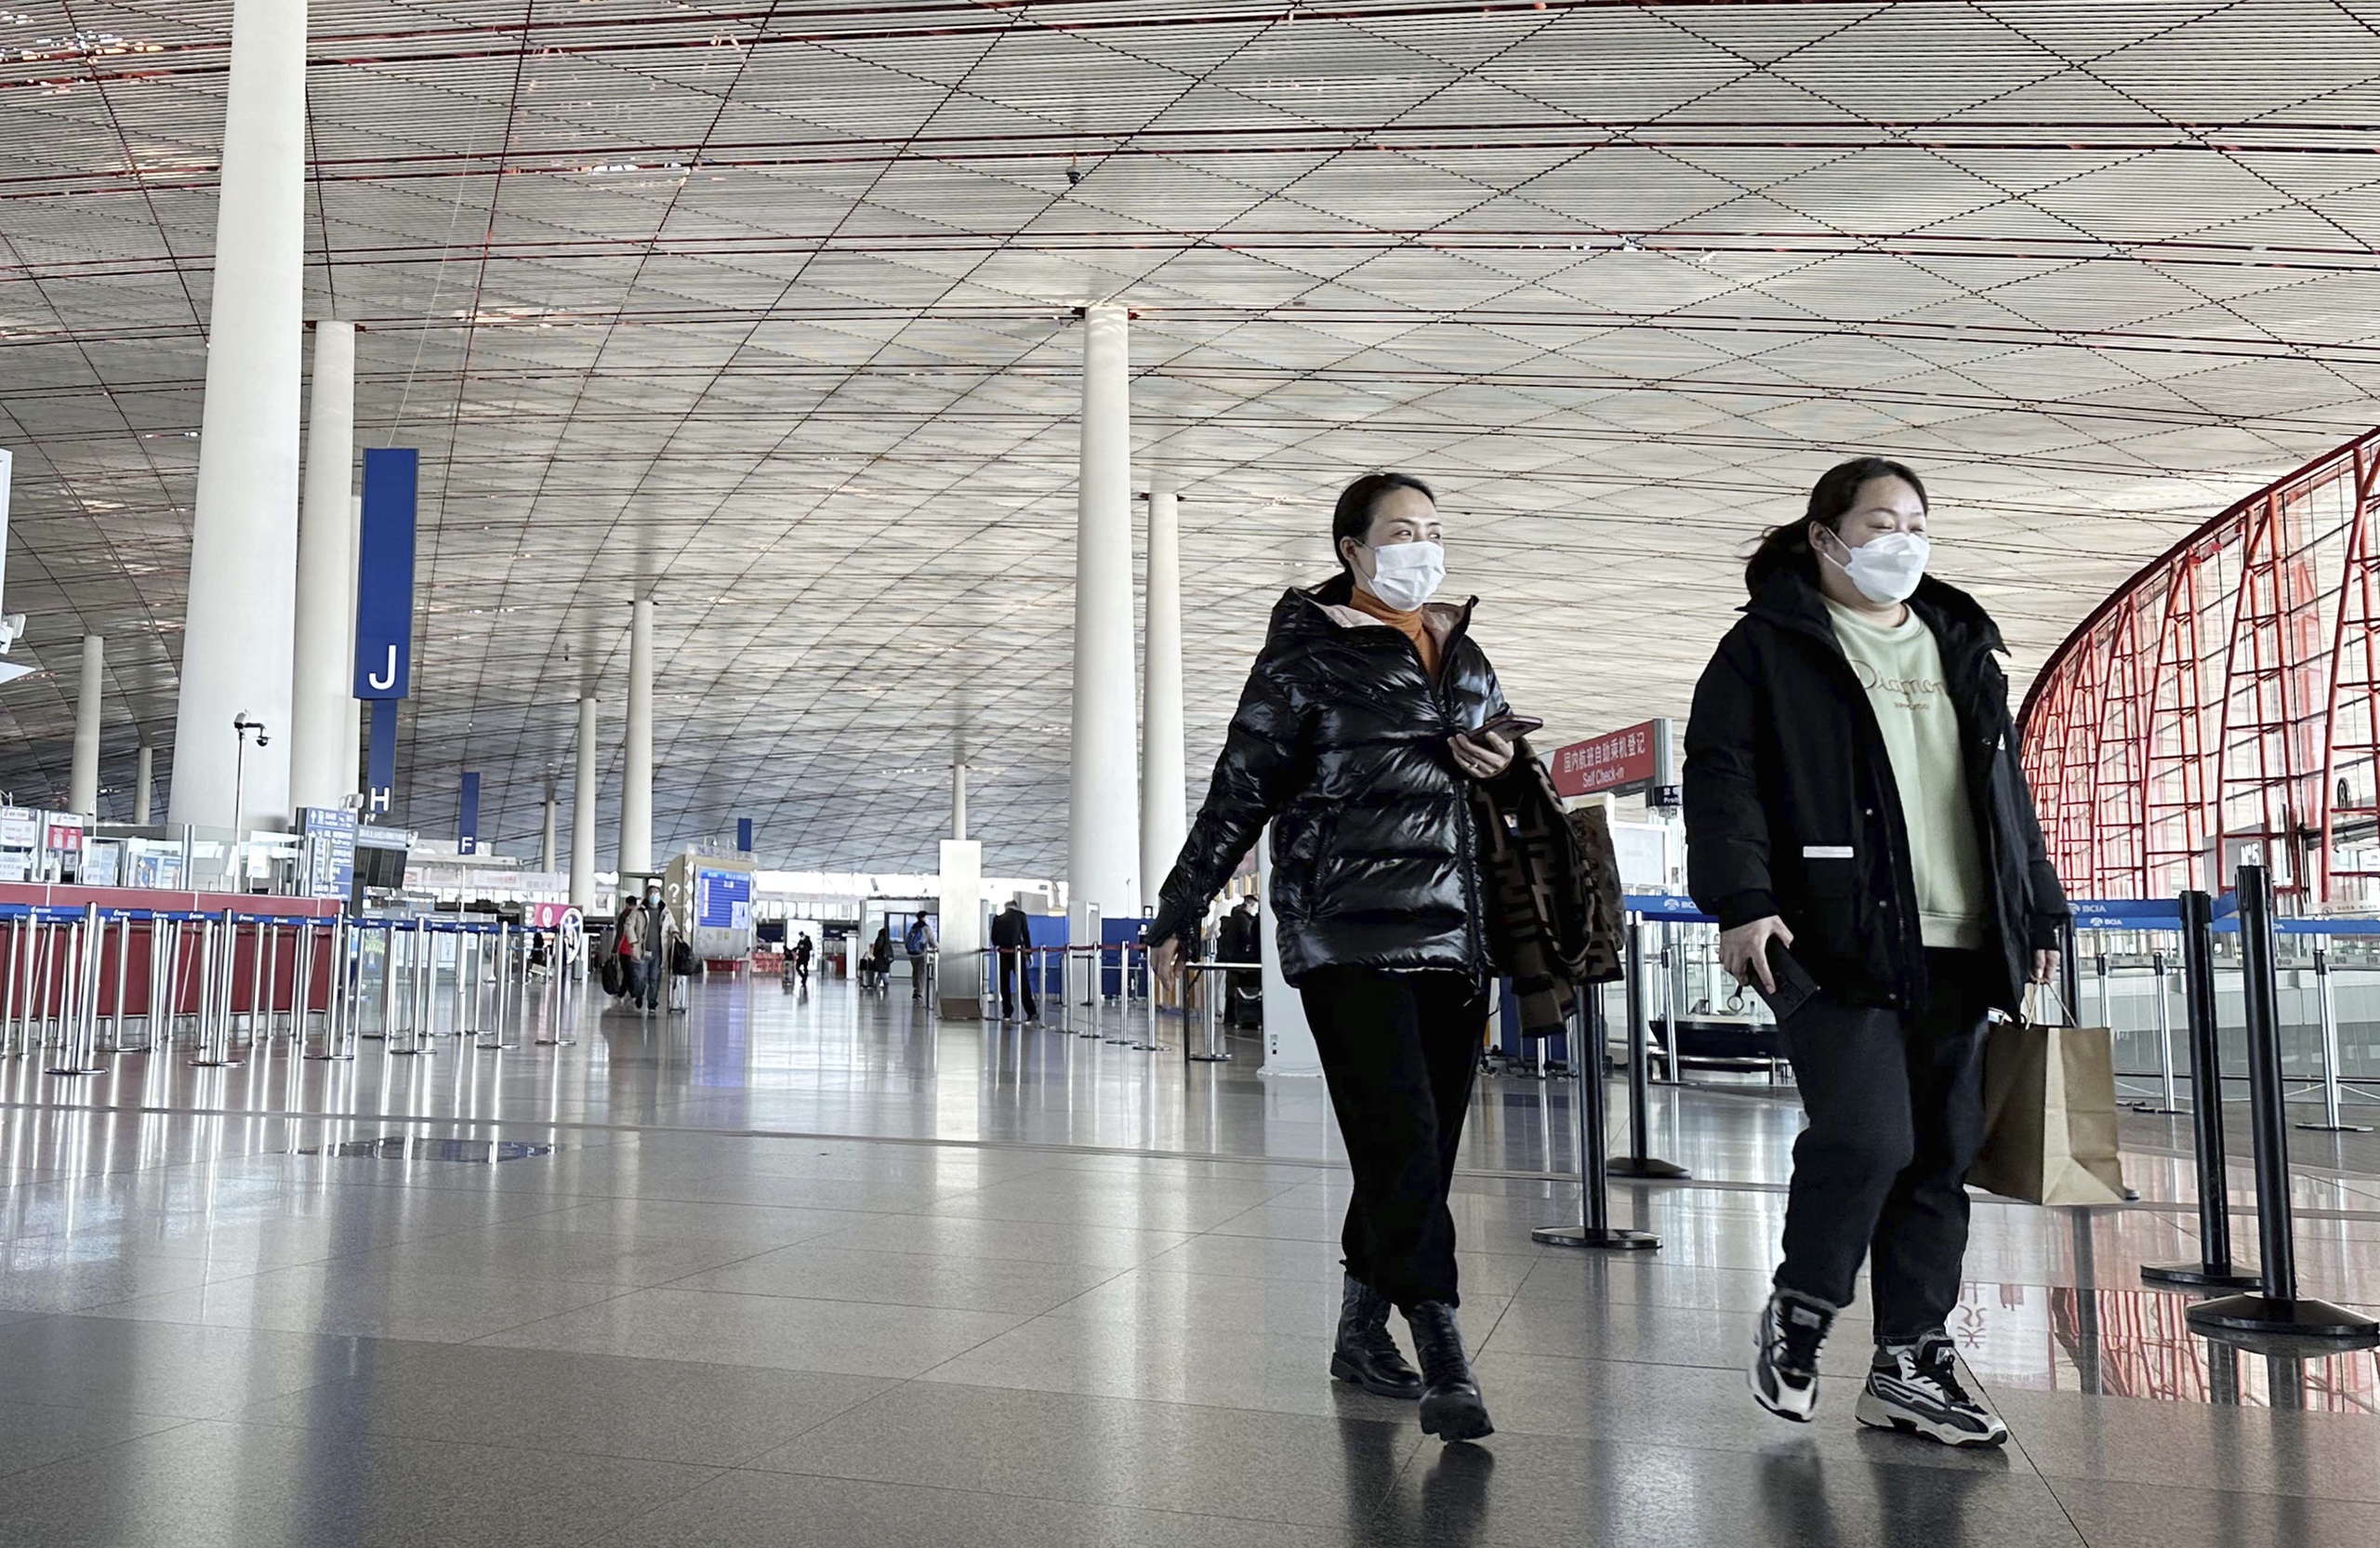 Le autorità sanitarie italiane testeranno tutti i viaggiatori provenienti dalla Cina per il virus corona.  La misura è stata introdotta dopo che oltre il 50% dei viaggiatori su due voli dalla Cina a Milano è risultato essere portatore del virus. 